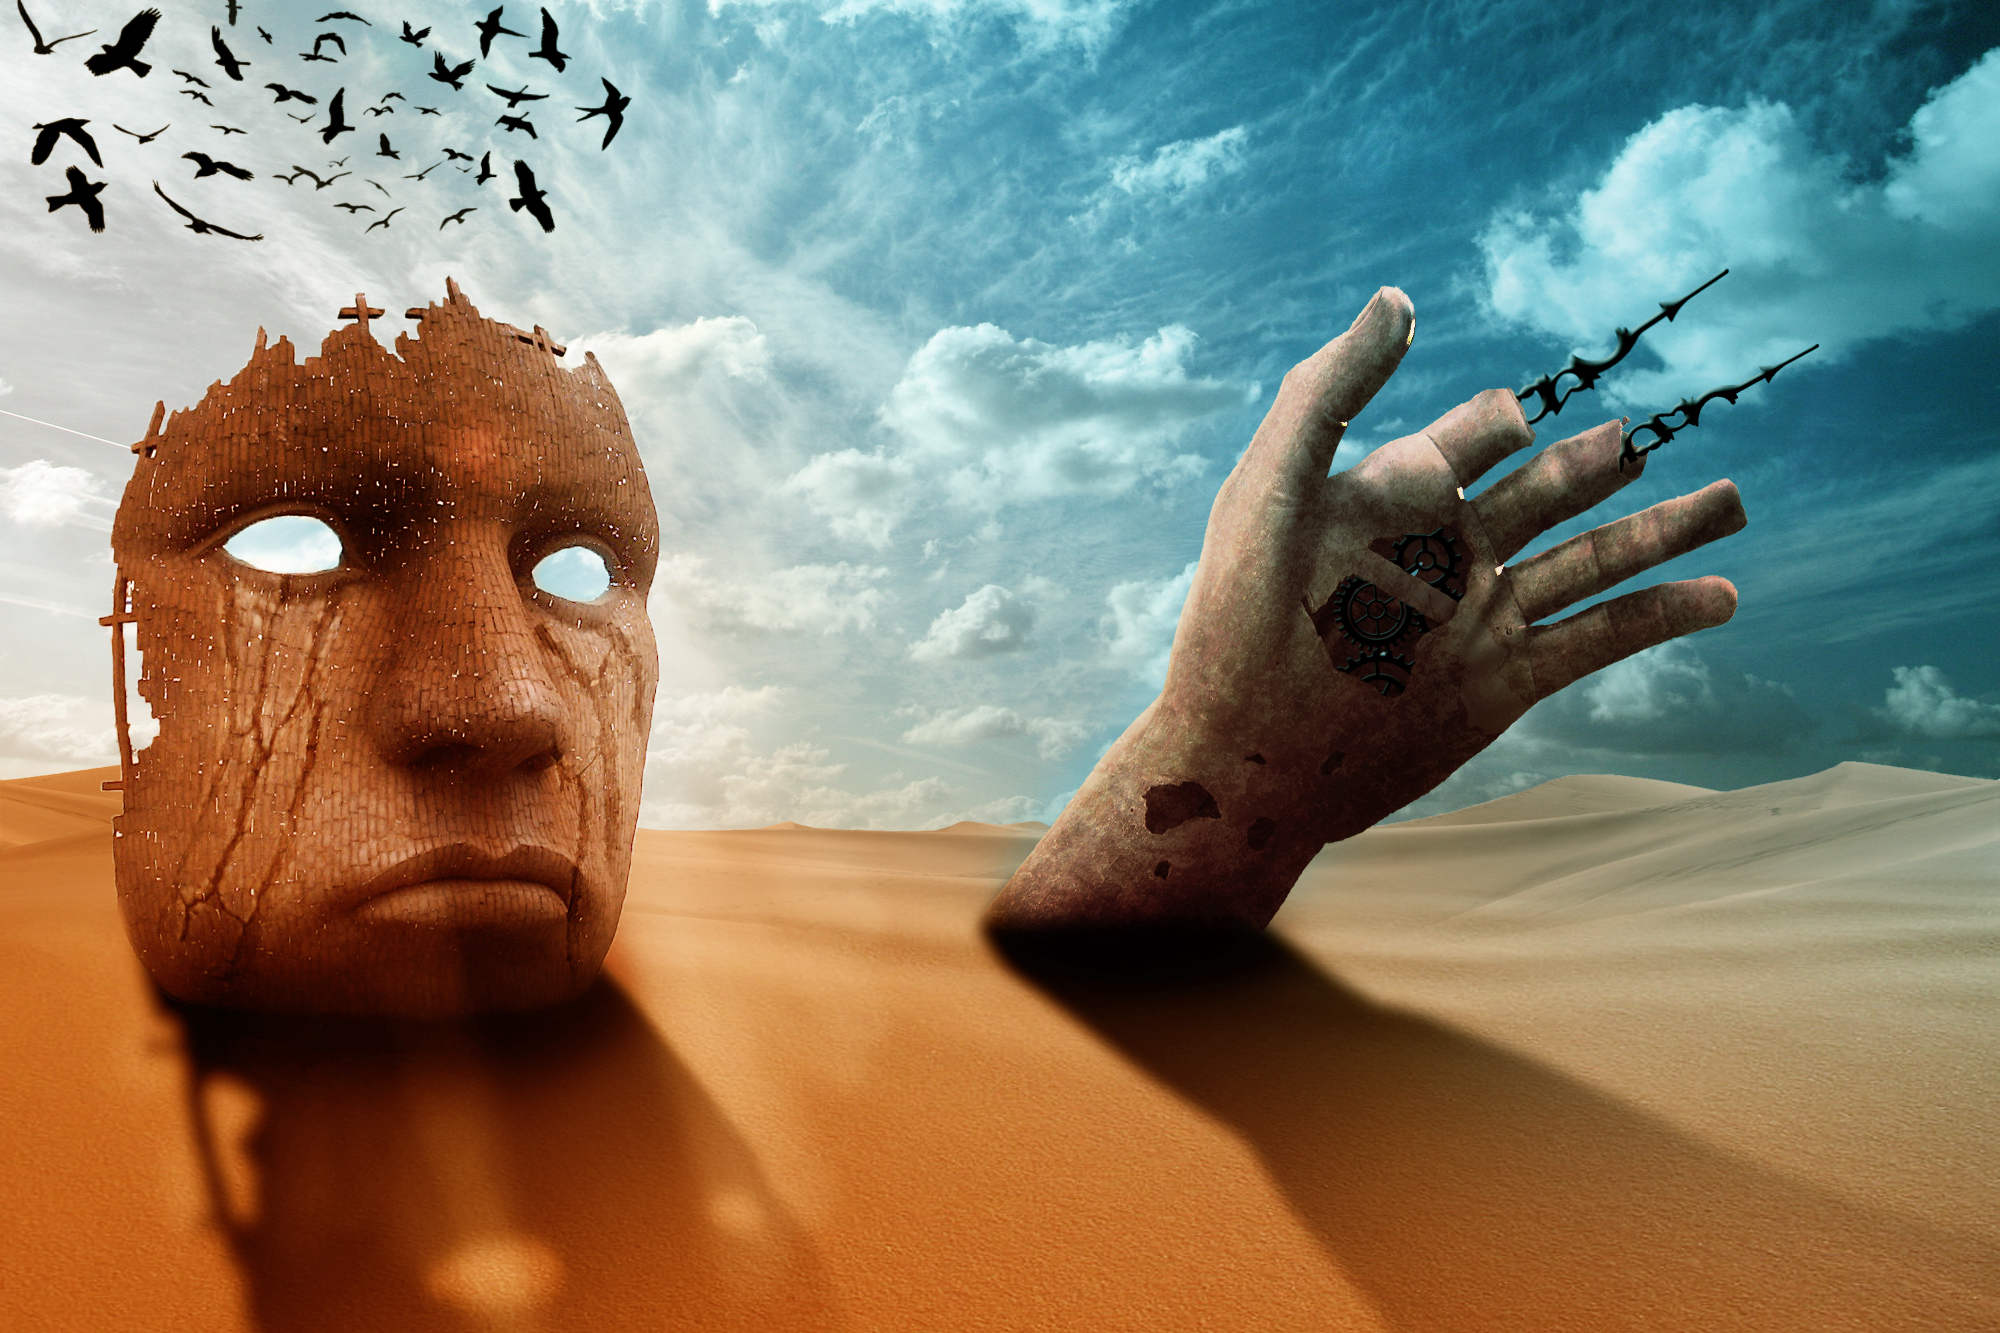 Digital Art Artwork Surreal Desert Sand Mask Hands Birds Nature Landscape Clouds Shadow Broken Gears 2000x1333